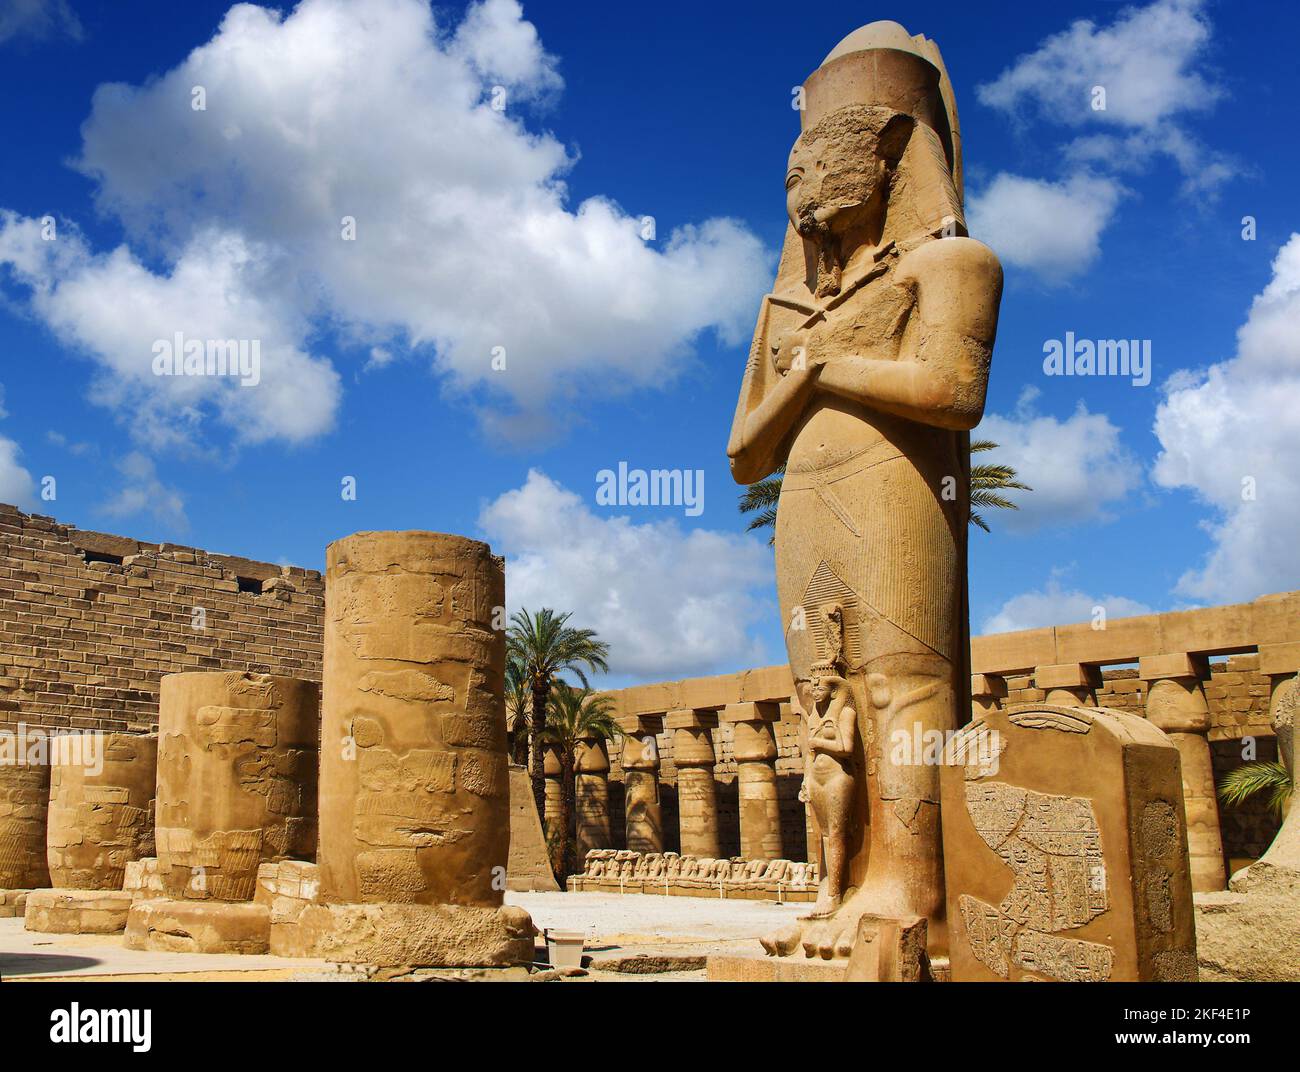 Afrika, Ägitten, Louxor, Karnak-Tempel, Statue, PPharao, Ruinen Banque D'Images